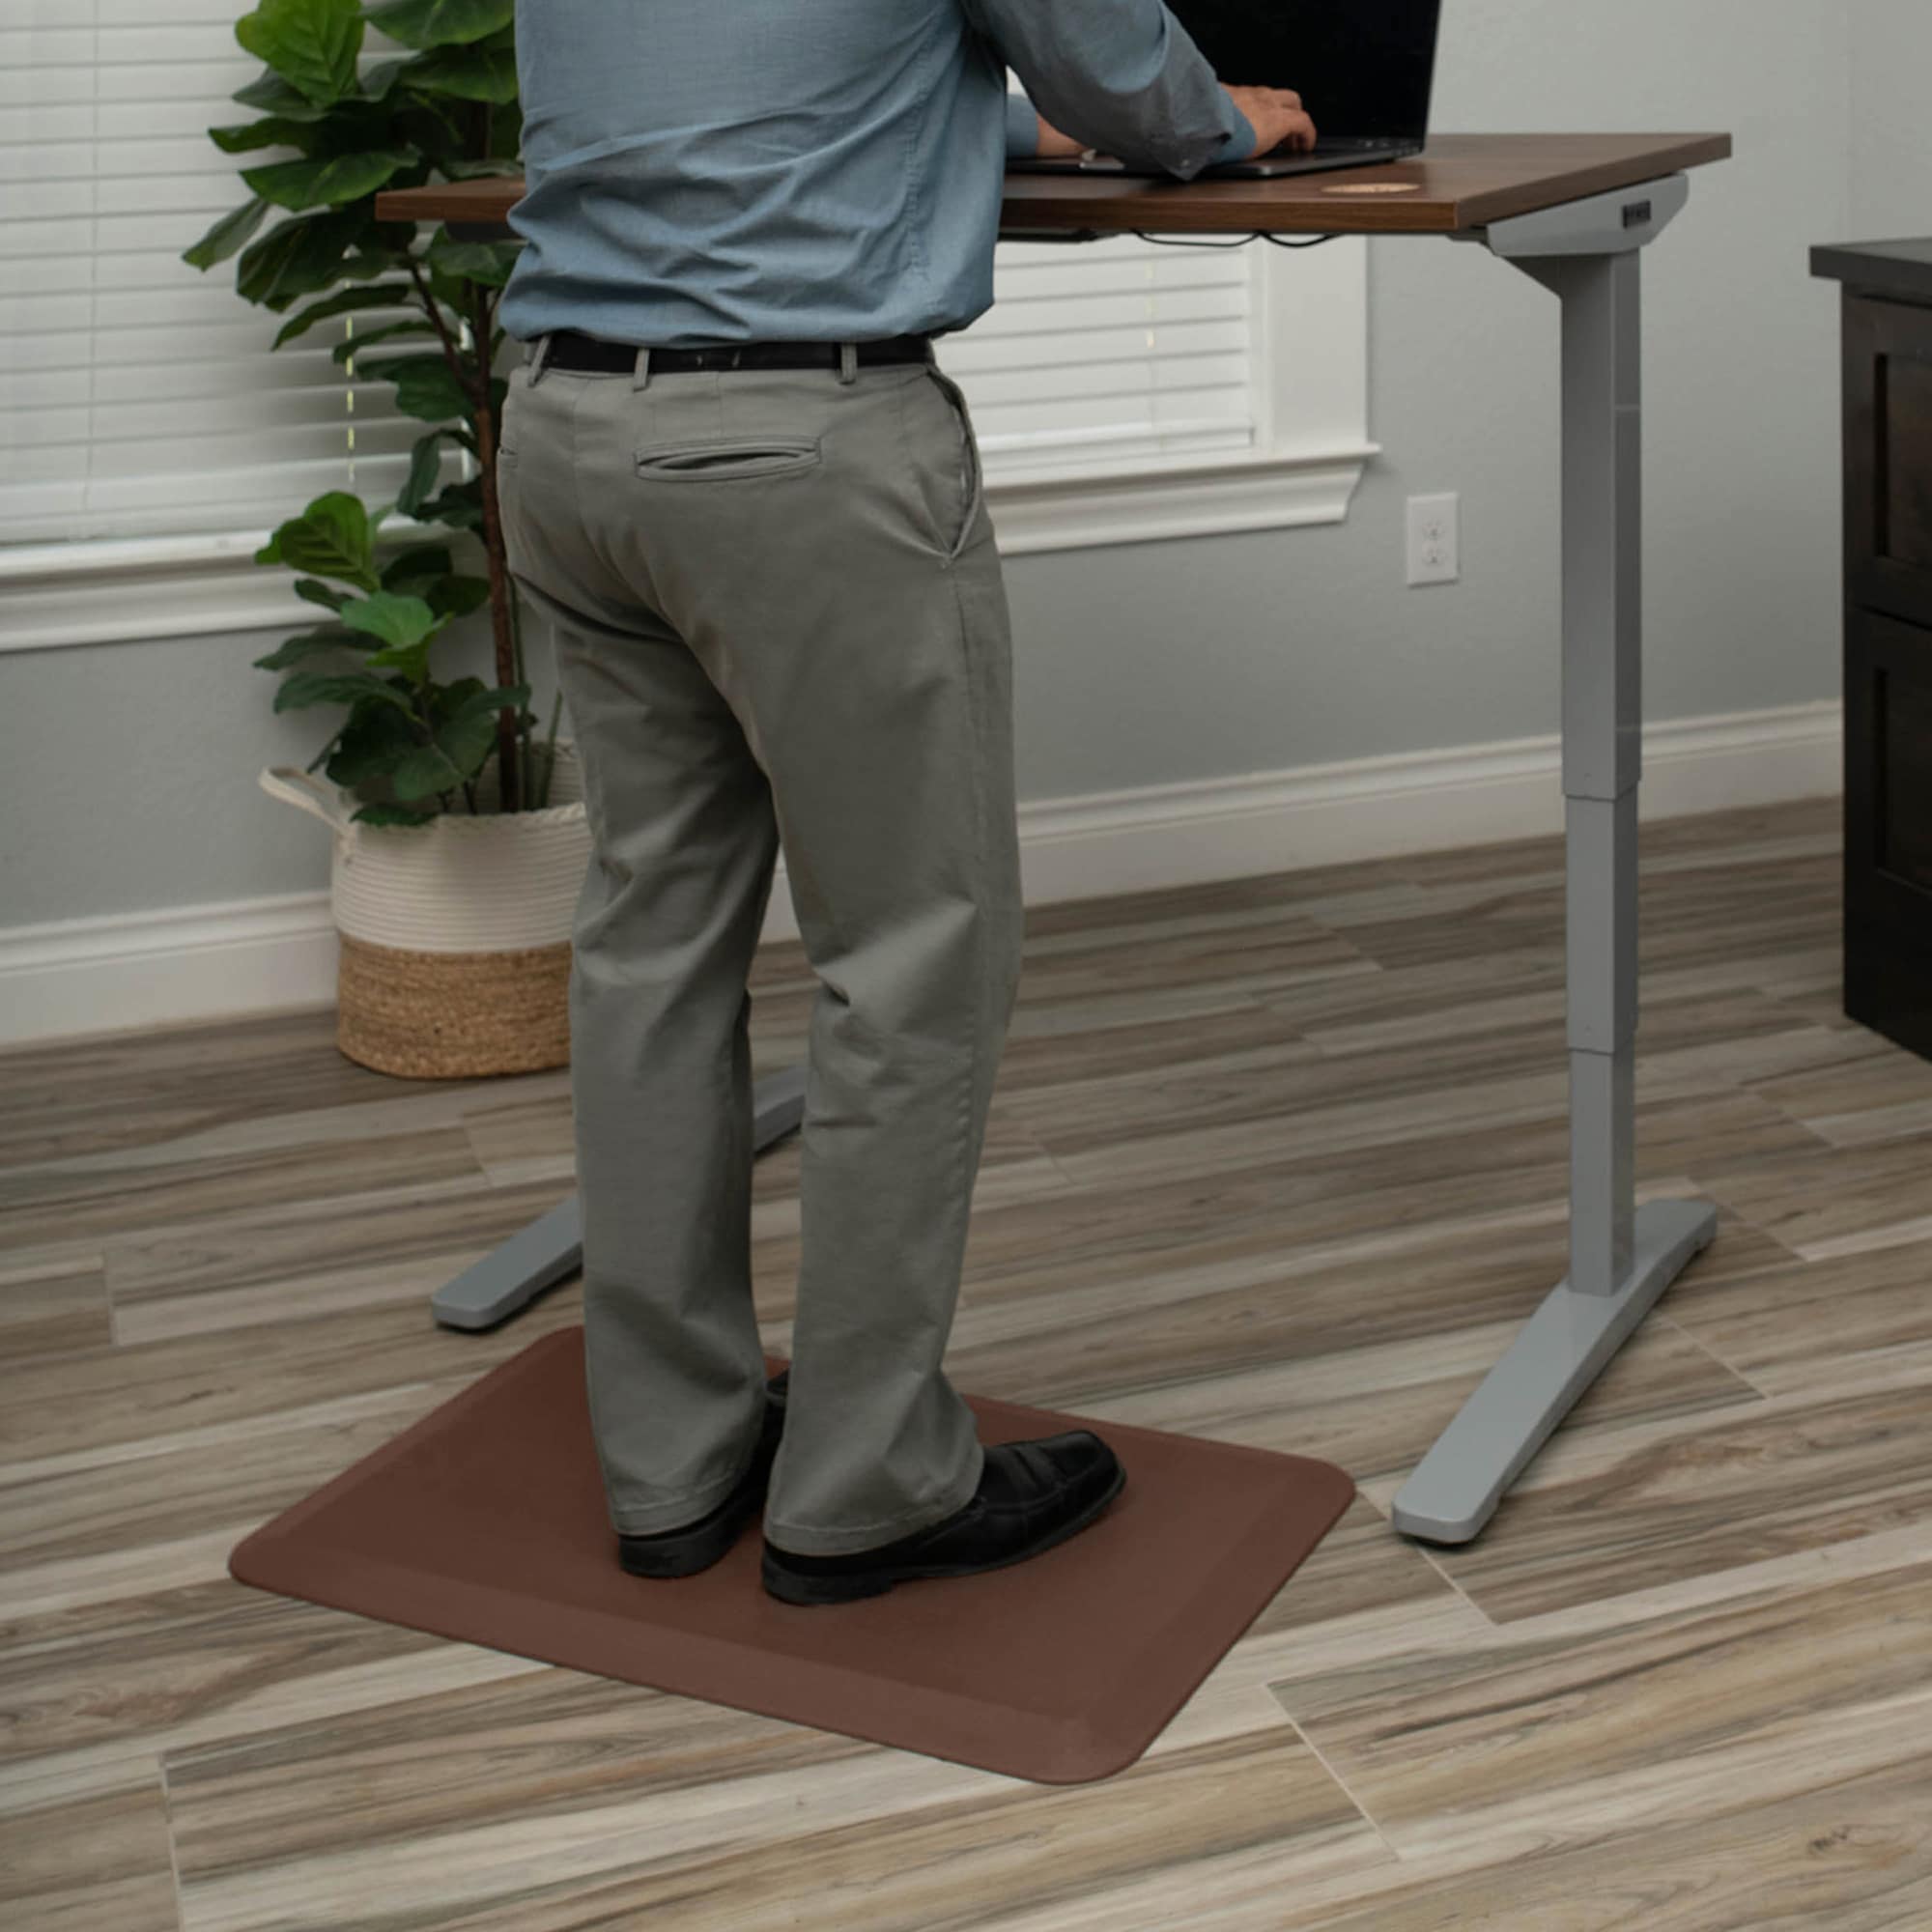 Top 10: Best Standing Desk Mats of 2021 / Anti Fatigue Mat for Office,  Countertop, Kitchen 